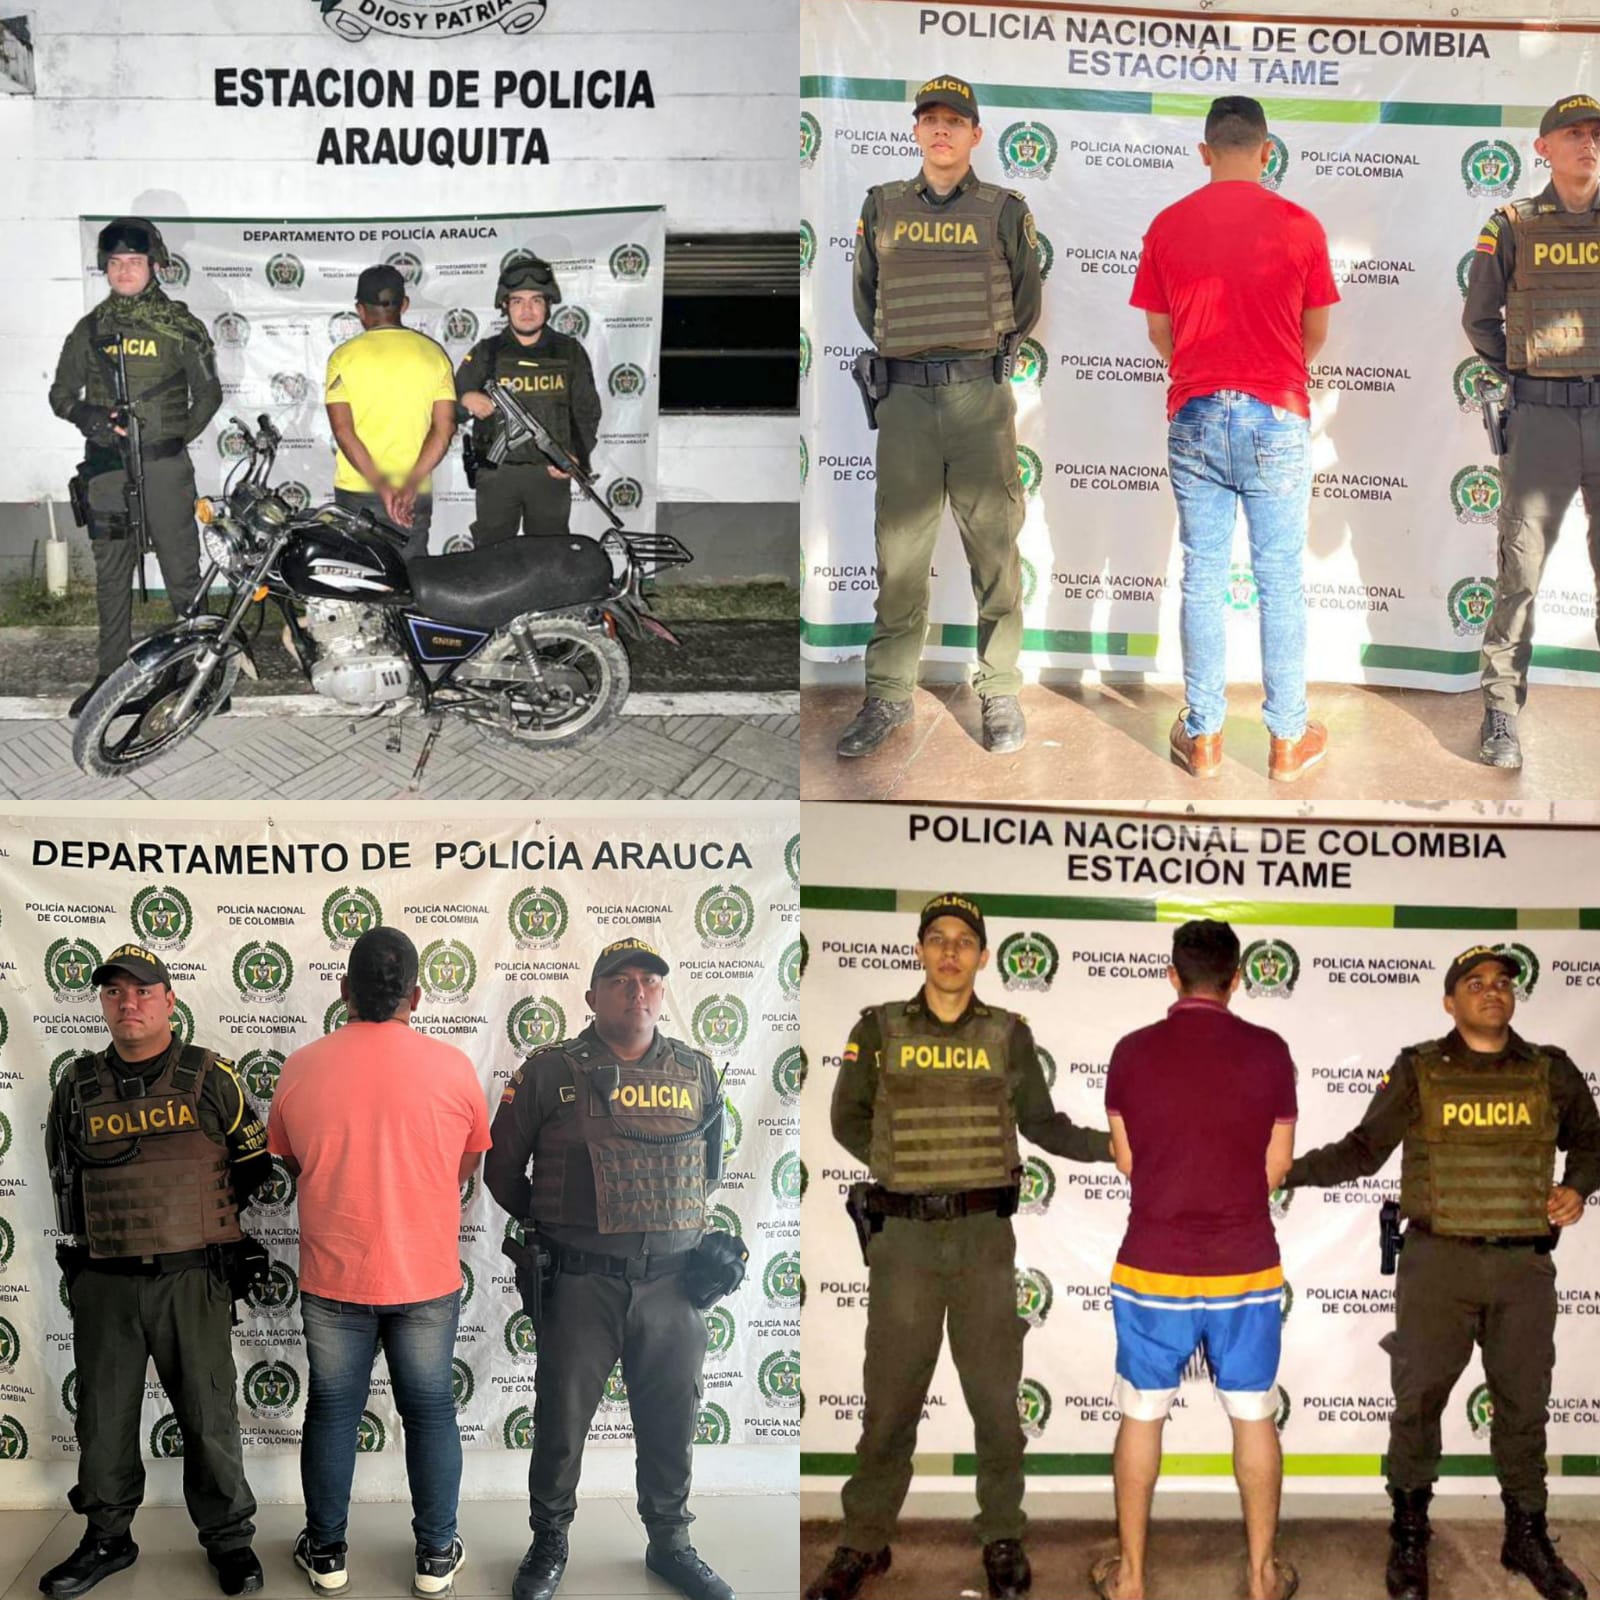 Operativos por parte de la Policía Nacional en el departamento de Arauca siguen arrojando resultados positivos